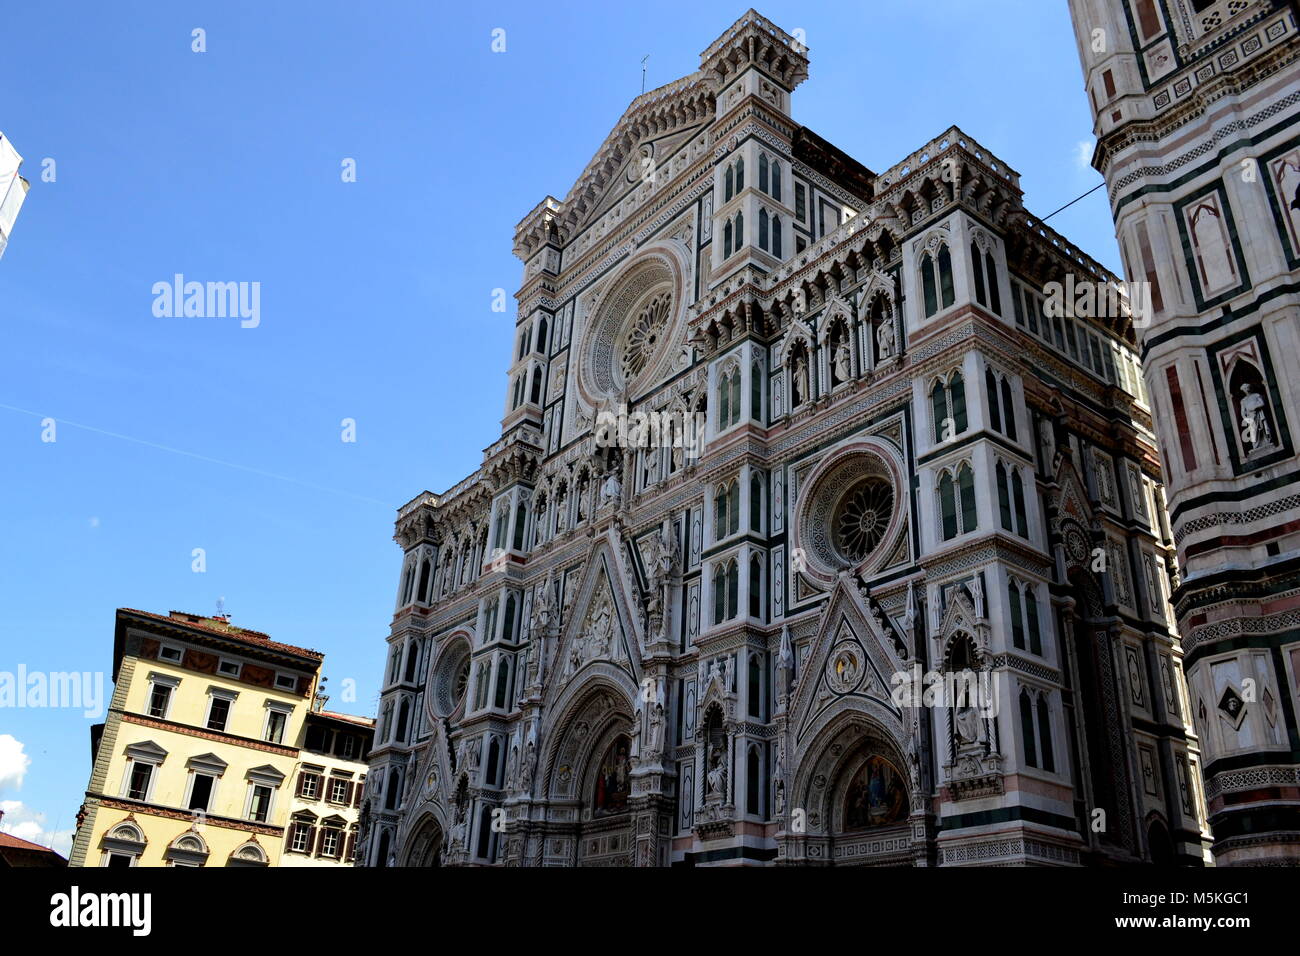 Cattedrale di Santa Maria del Fiore, Florence Stock Photo